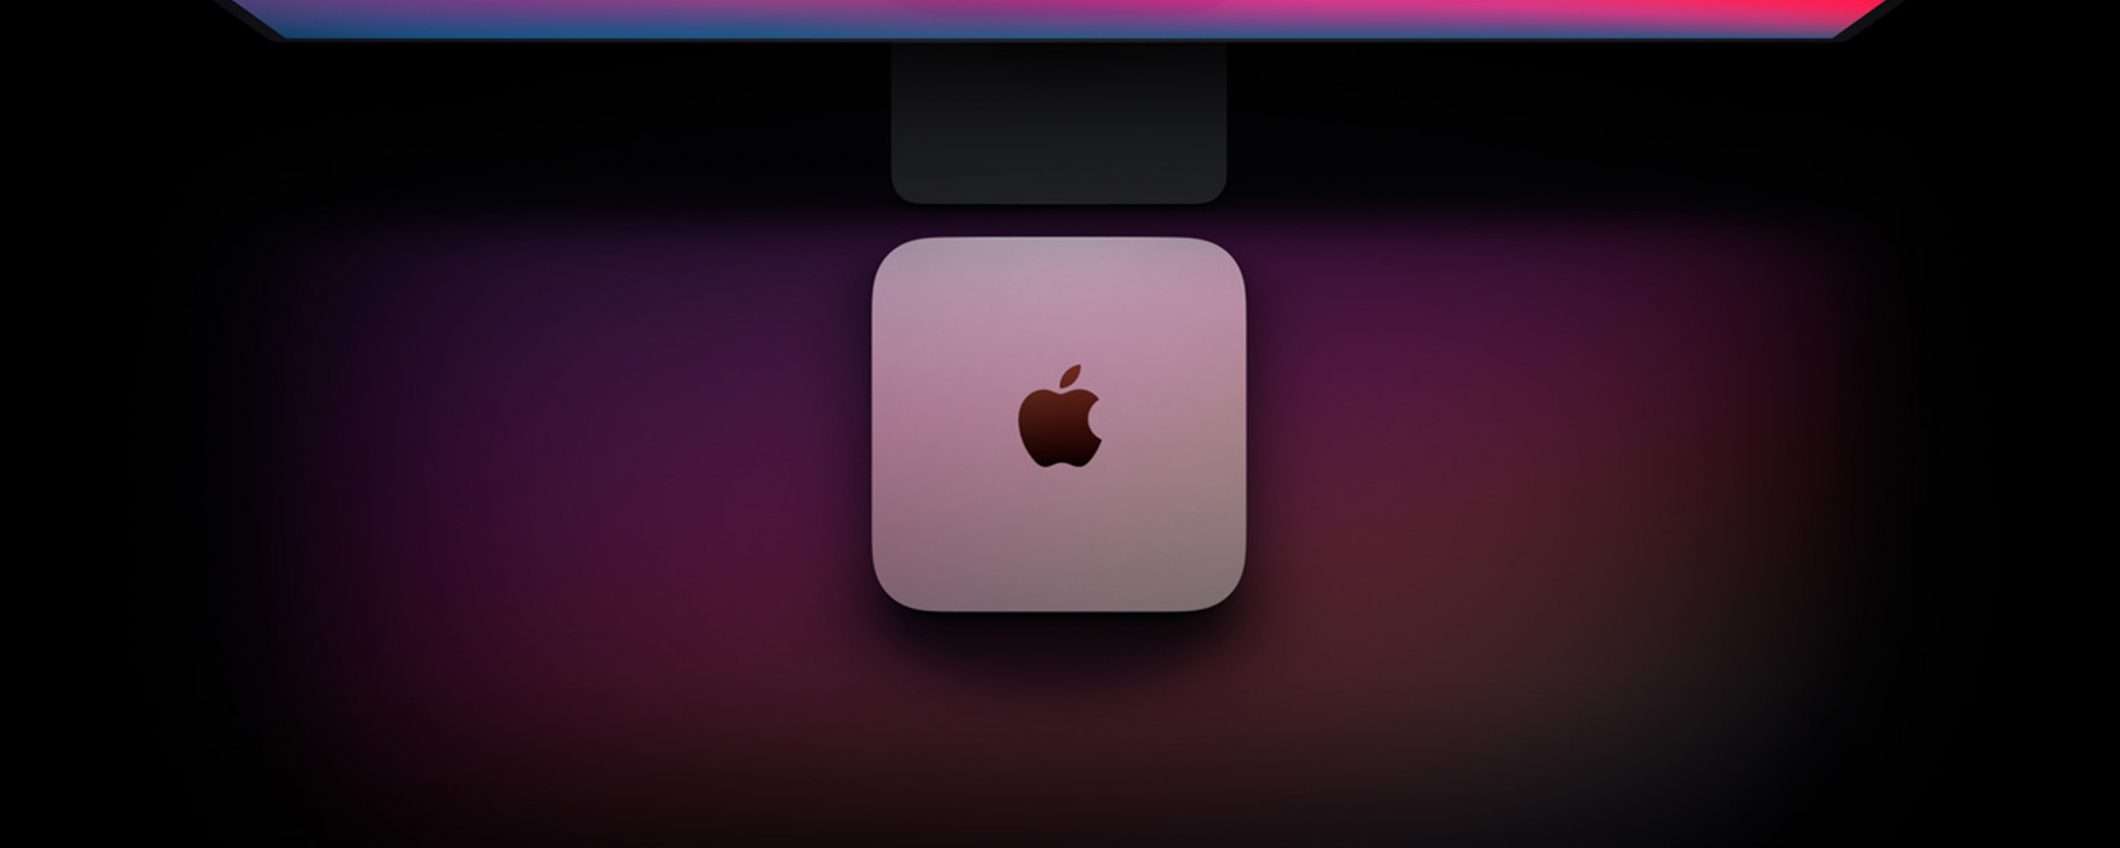 Apple Mac Mini con M1 in offerta al Minimo Storico (-80€)